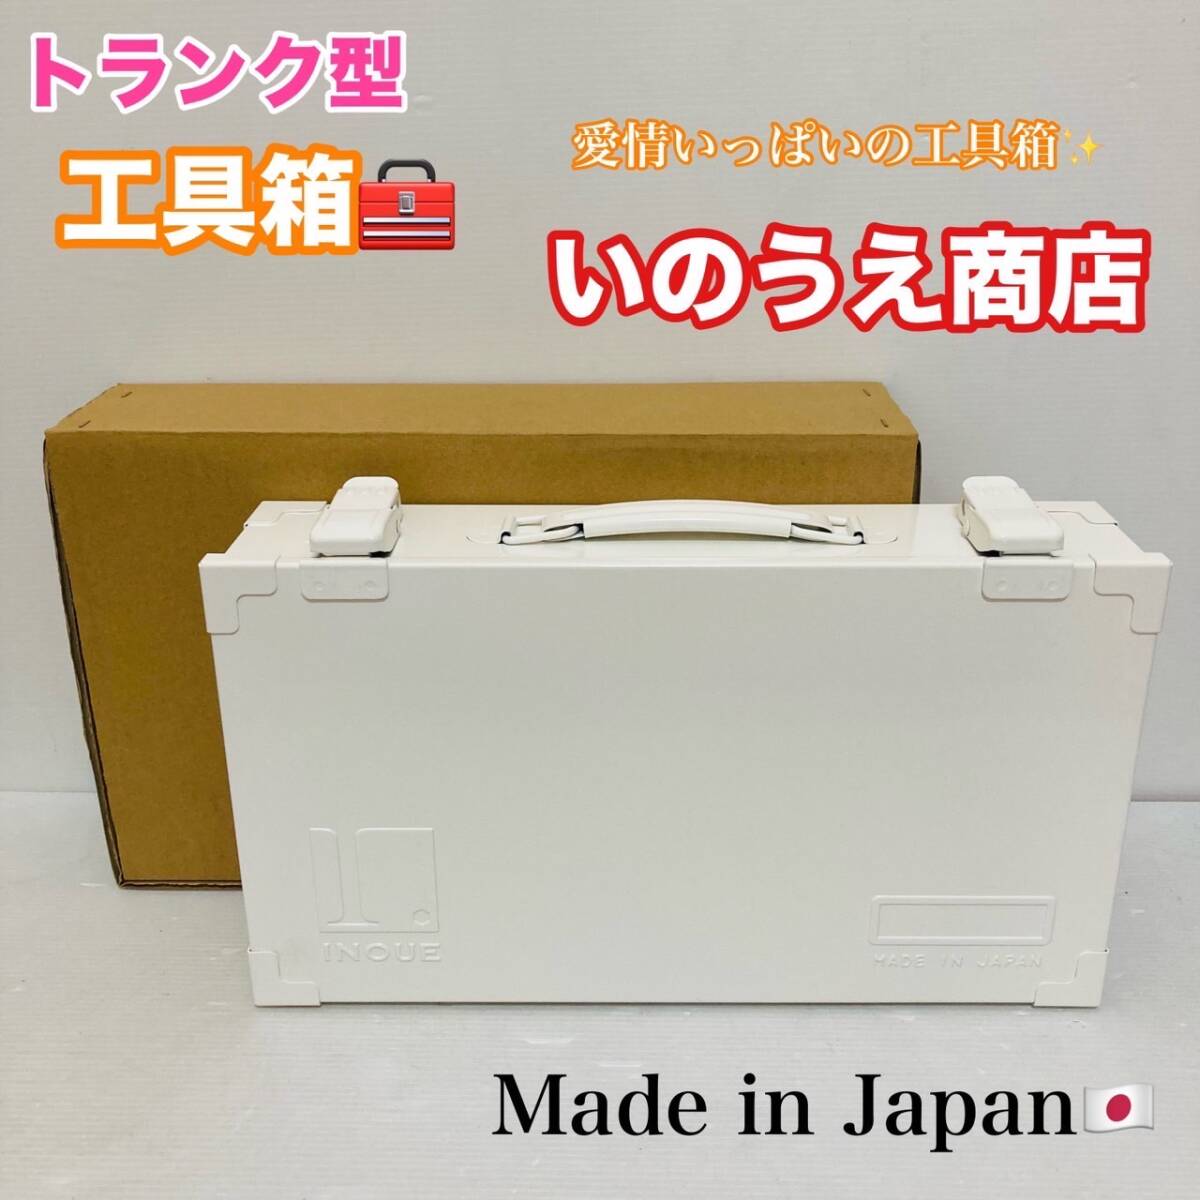 未使用品 トランク型 工具箱 いのうえ商店 工具入れ KT-360 道具箱 日本製 スチール製 収納ボックス ツールボックス ホワイト/Y024-30_画像1